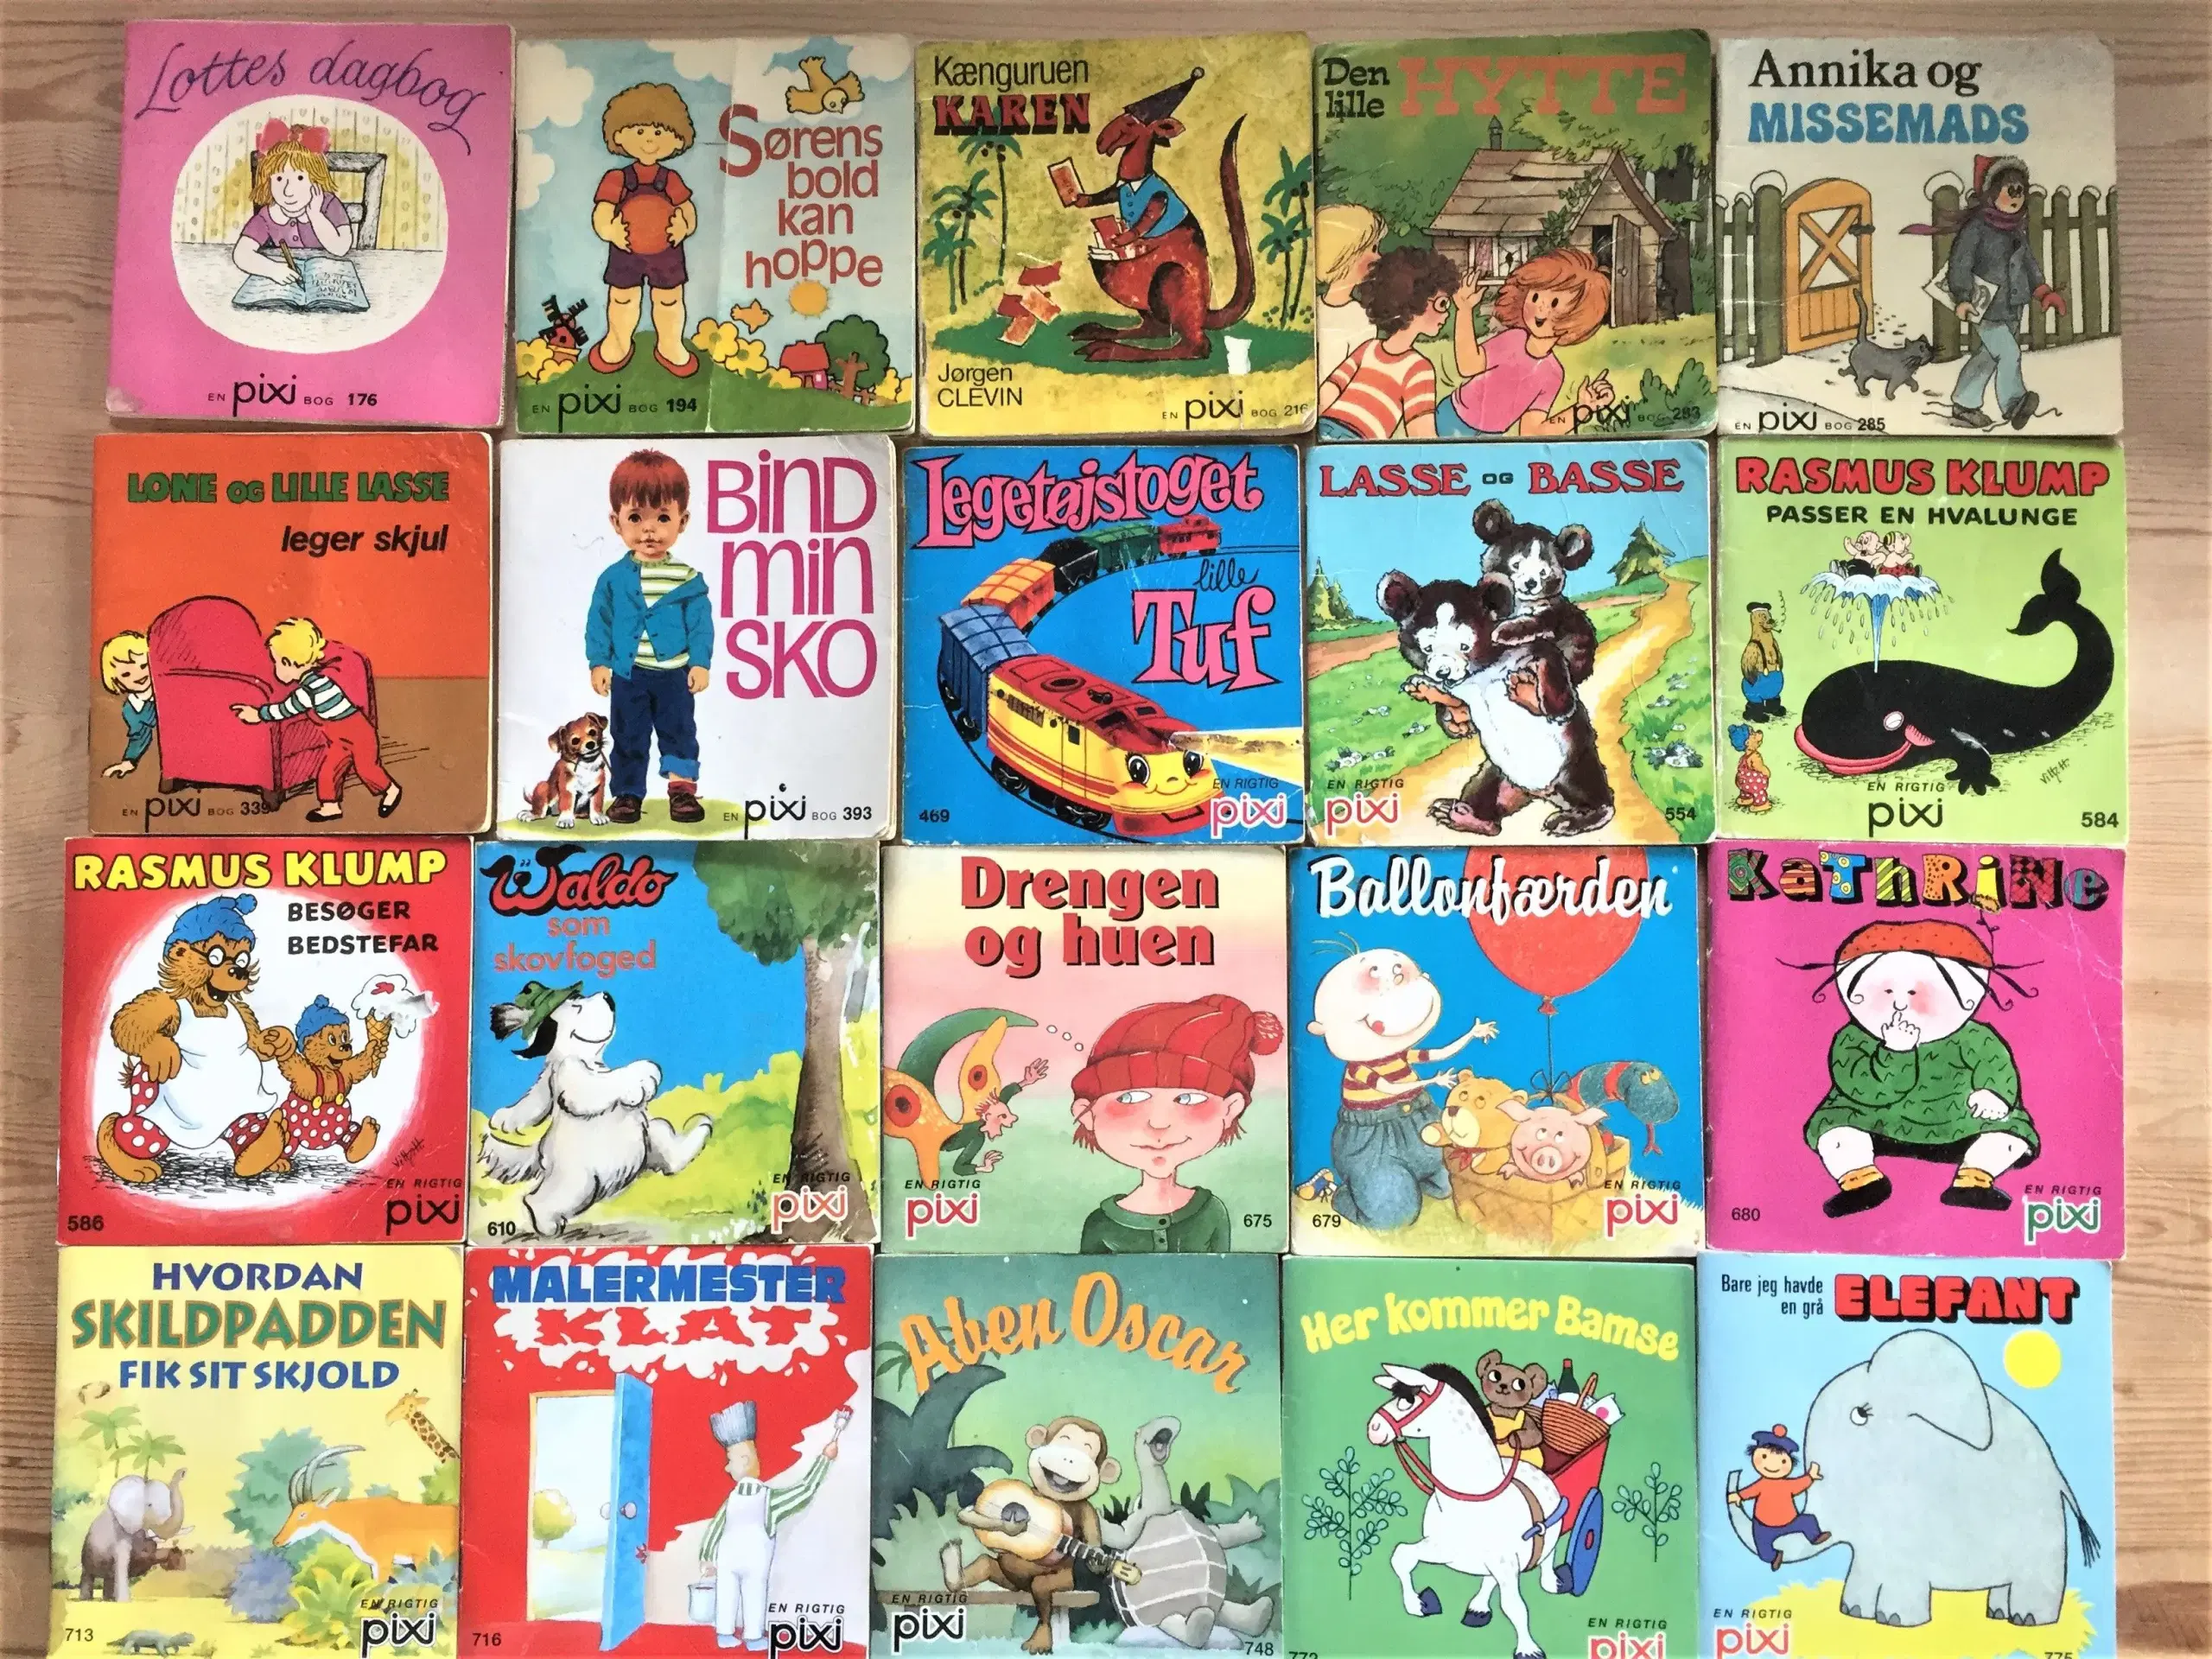 SUPERTILBUD: Masser af Pixi bøger 4 kr pr stk